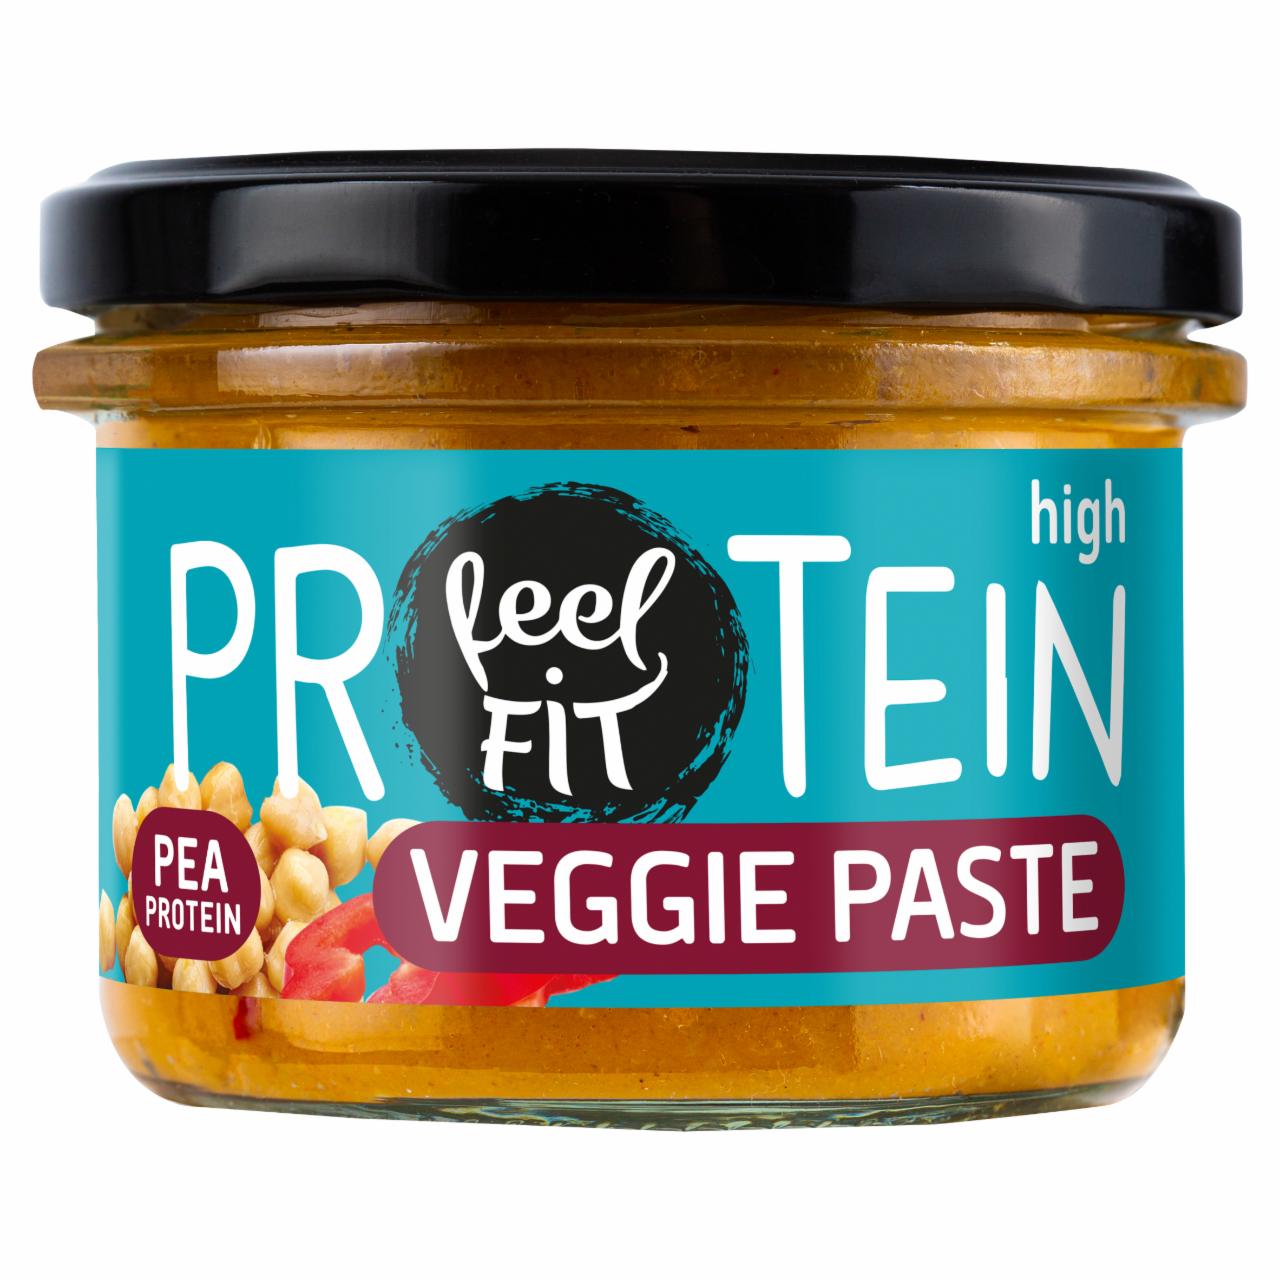 Zdjęcia - Feel Fit Protein Pasta warzywna z wędzoną papryką 185 g